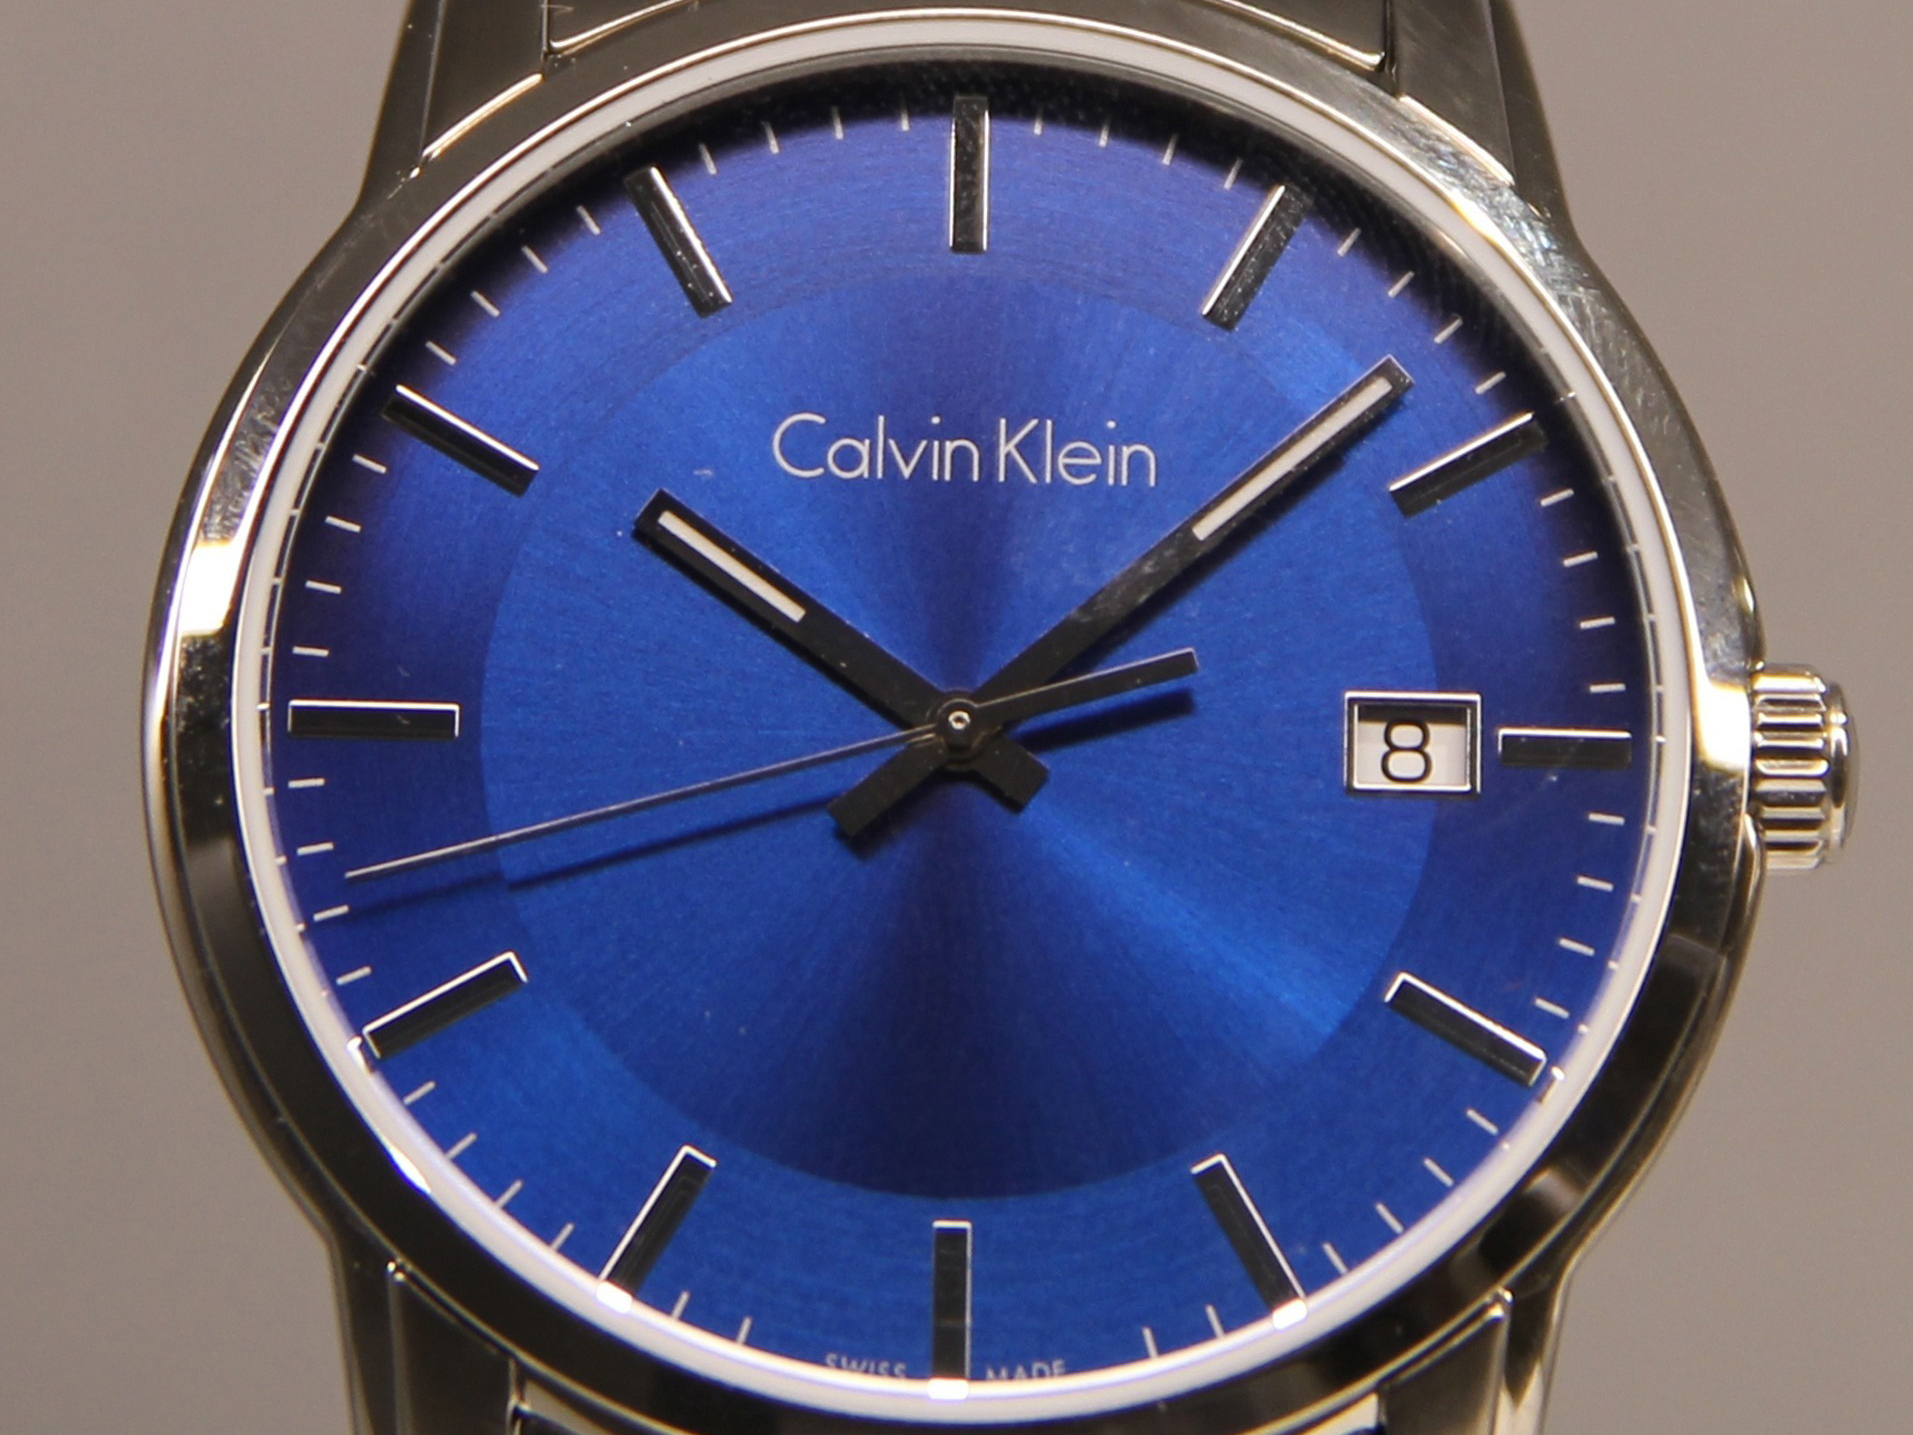 Raar been Buitenland Swatch Ends Calvin Klein Swiss Watch License as Contract Expires - Bloomberg